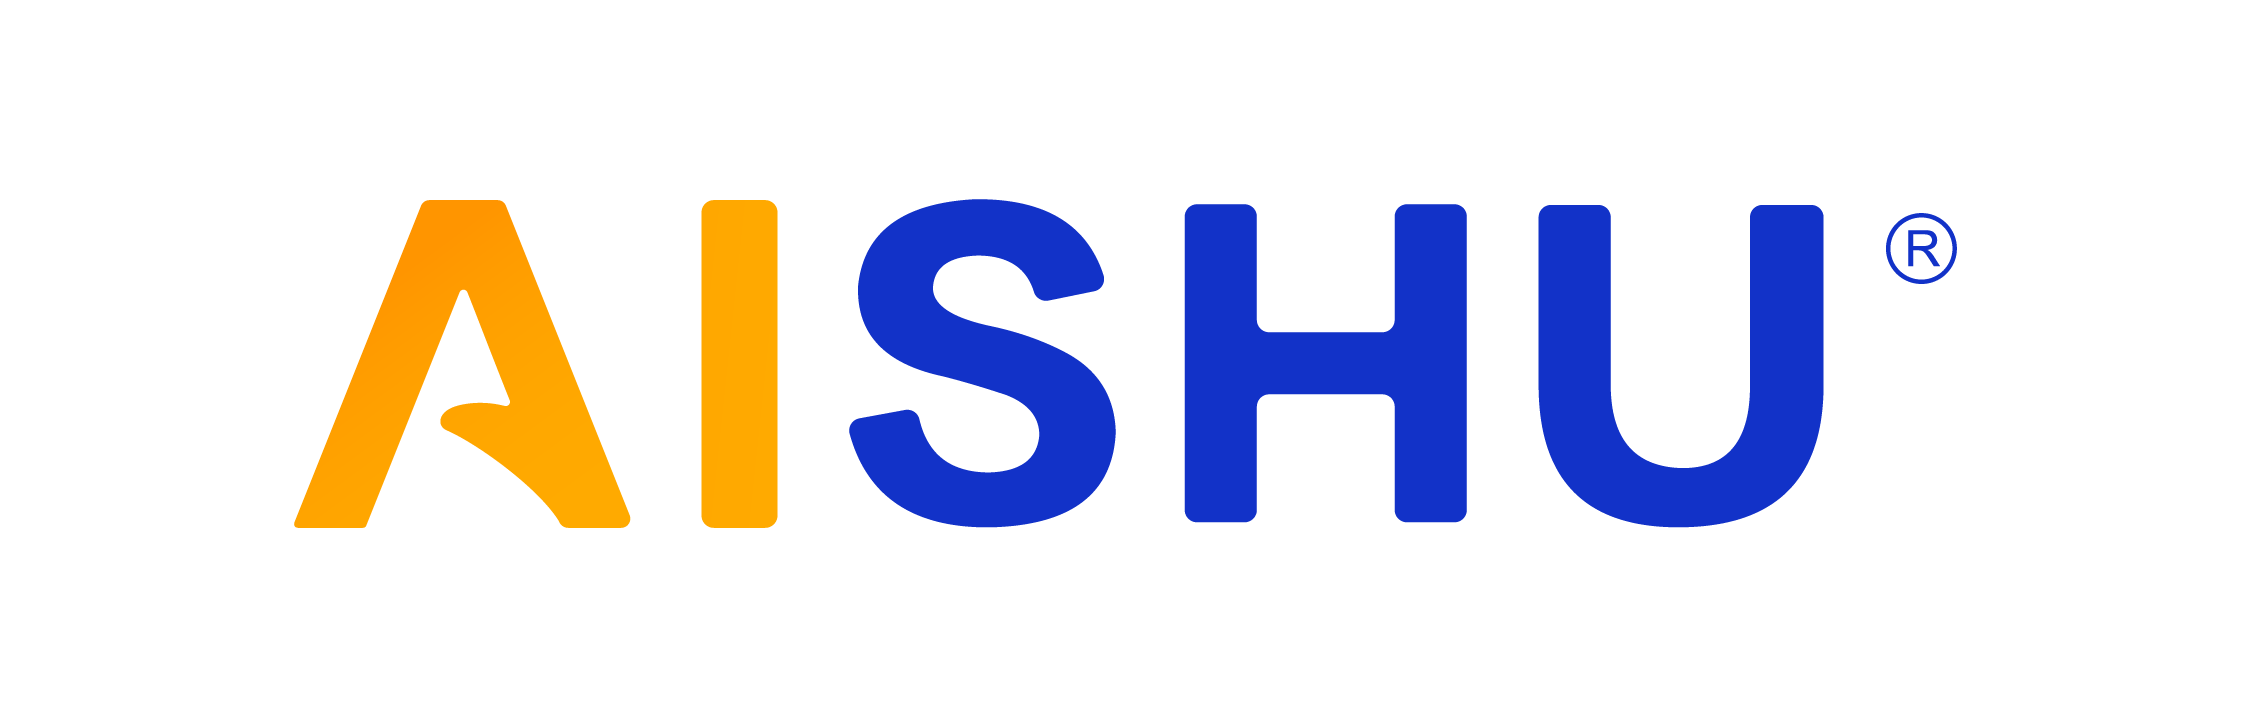 aishu logo.png